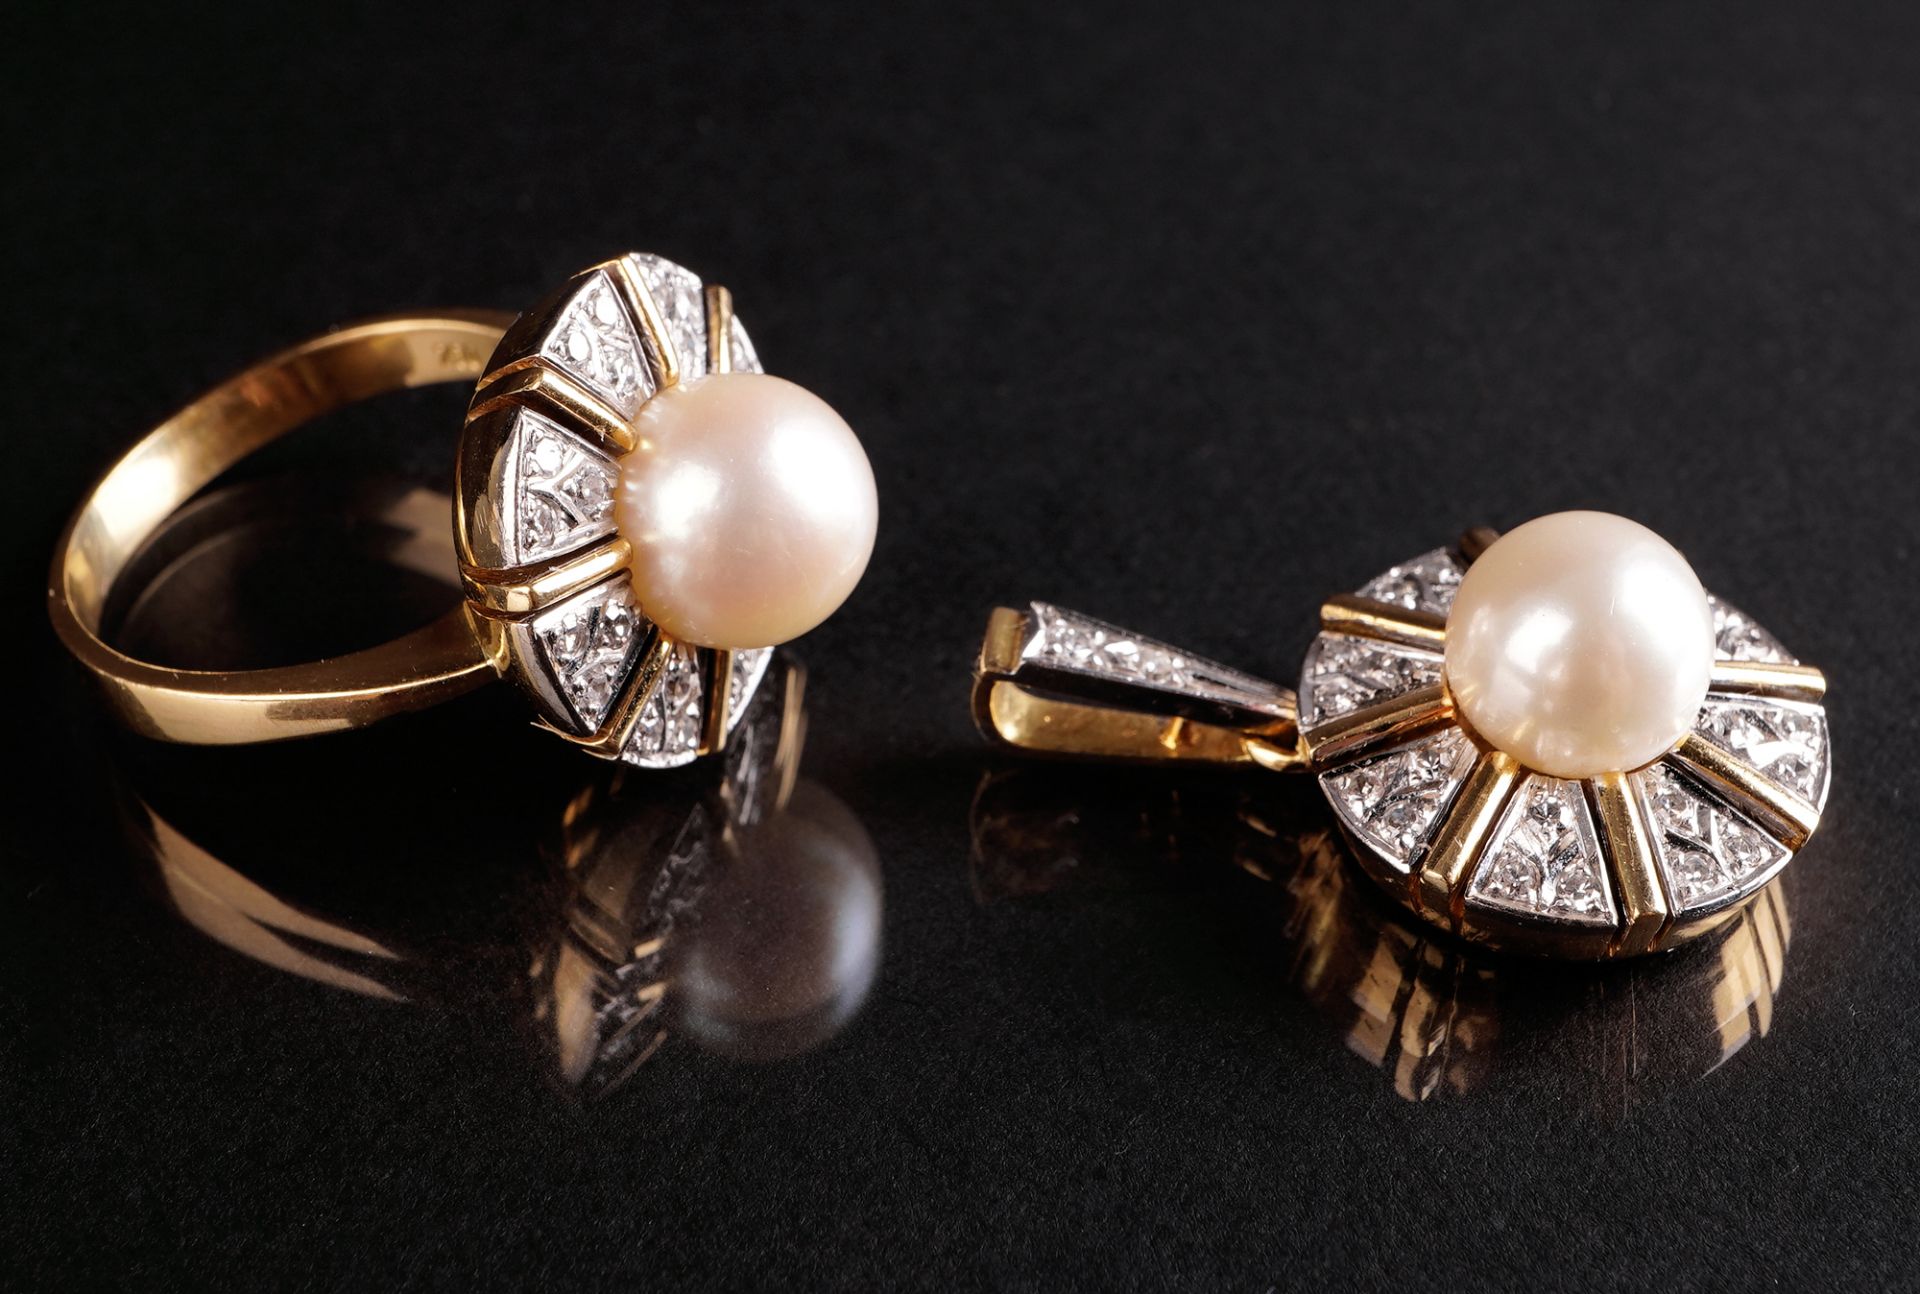 Ring und Anhänger mit Perle und Diamantbesatz, GG 750 - Image 2 of 5